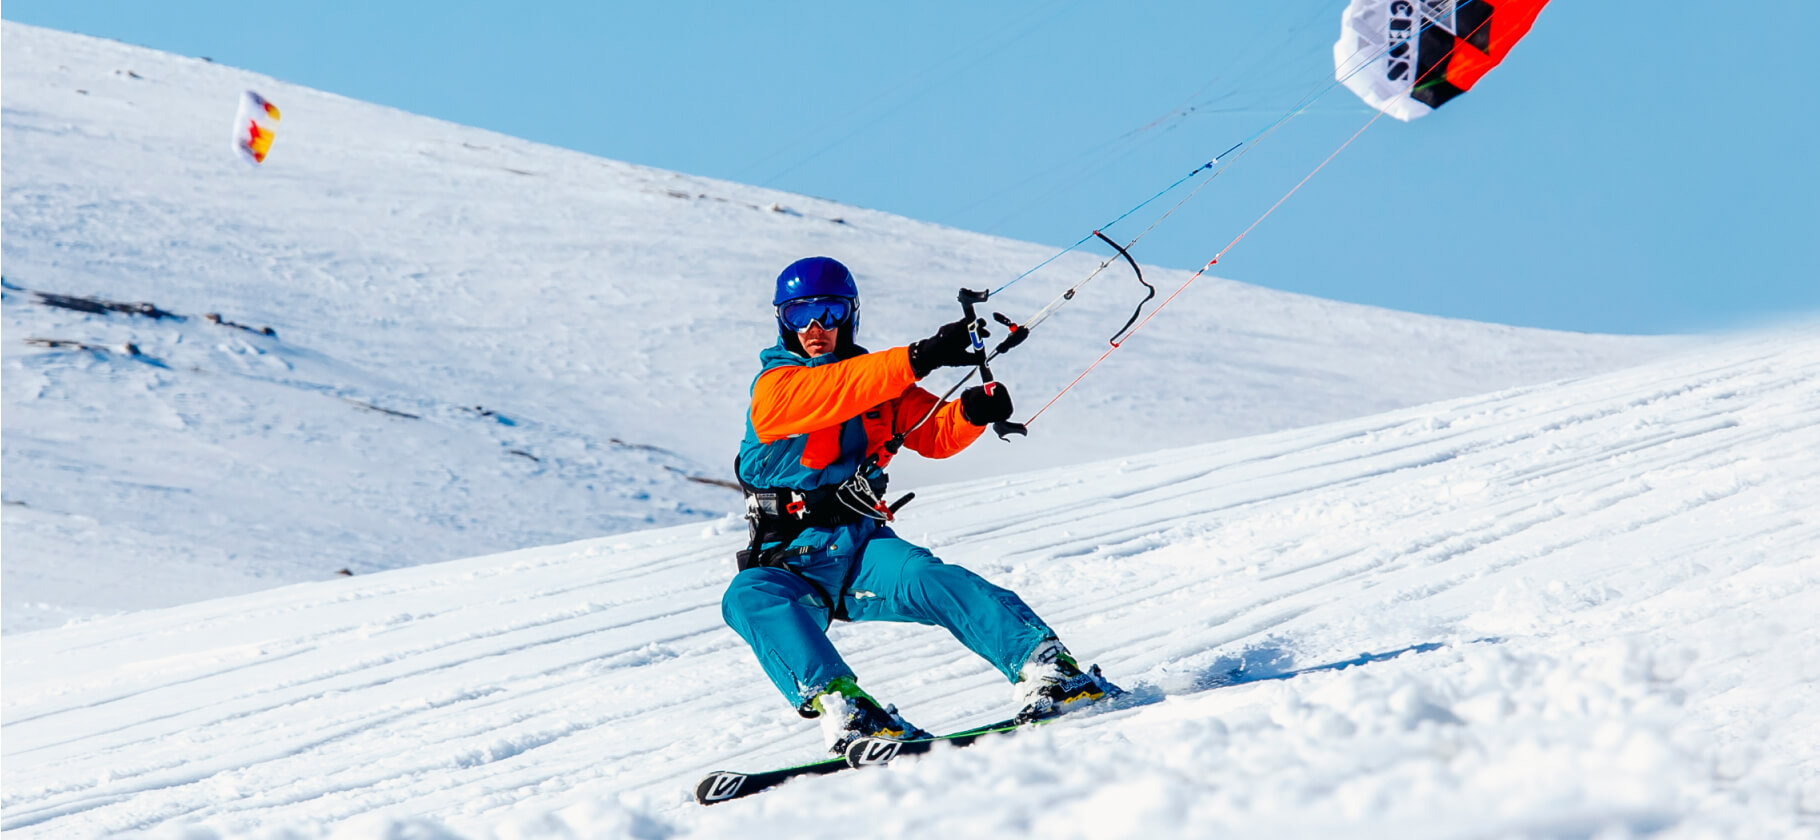 Лыжи, коньки и сноукайтинг: 8 зимних видов спорта